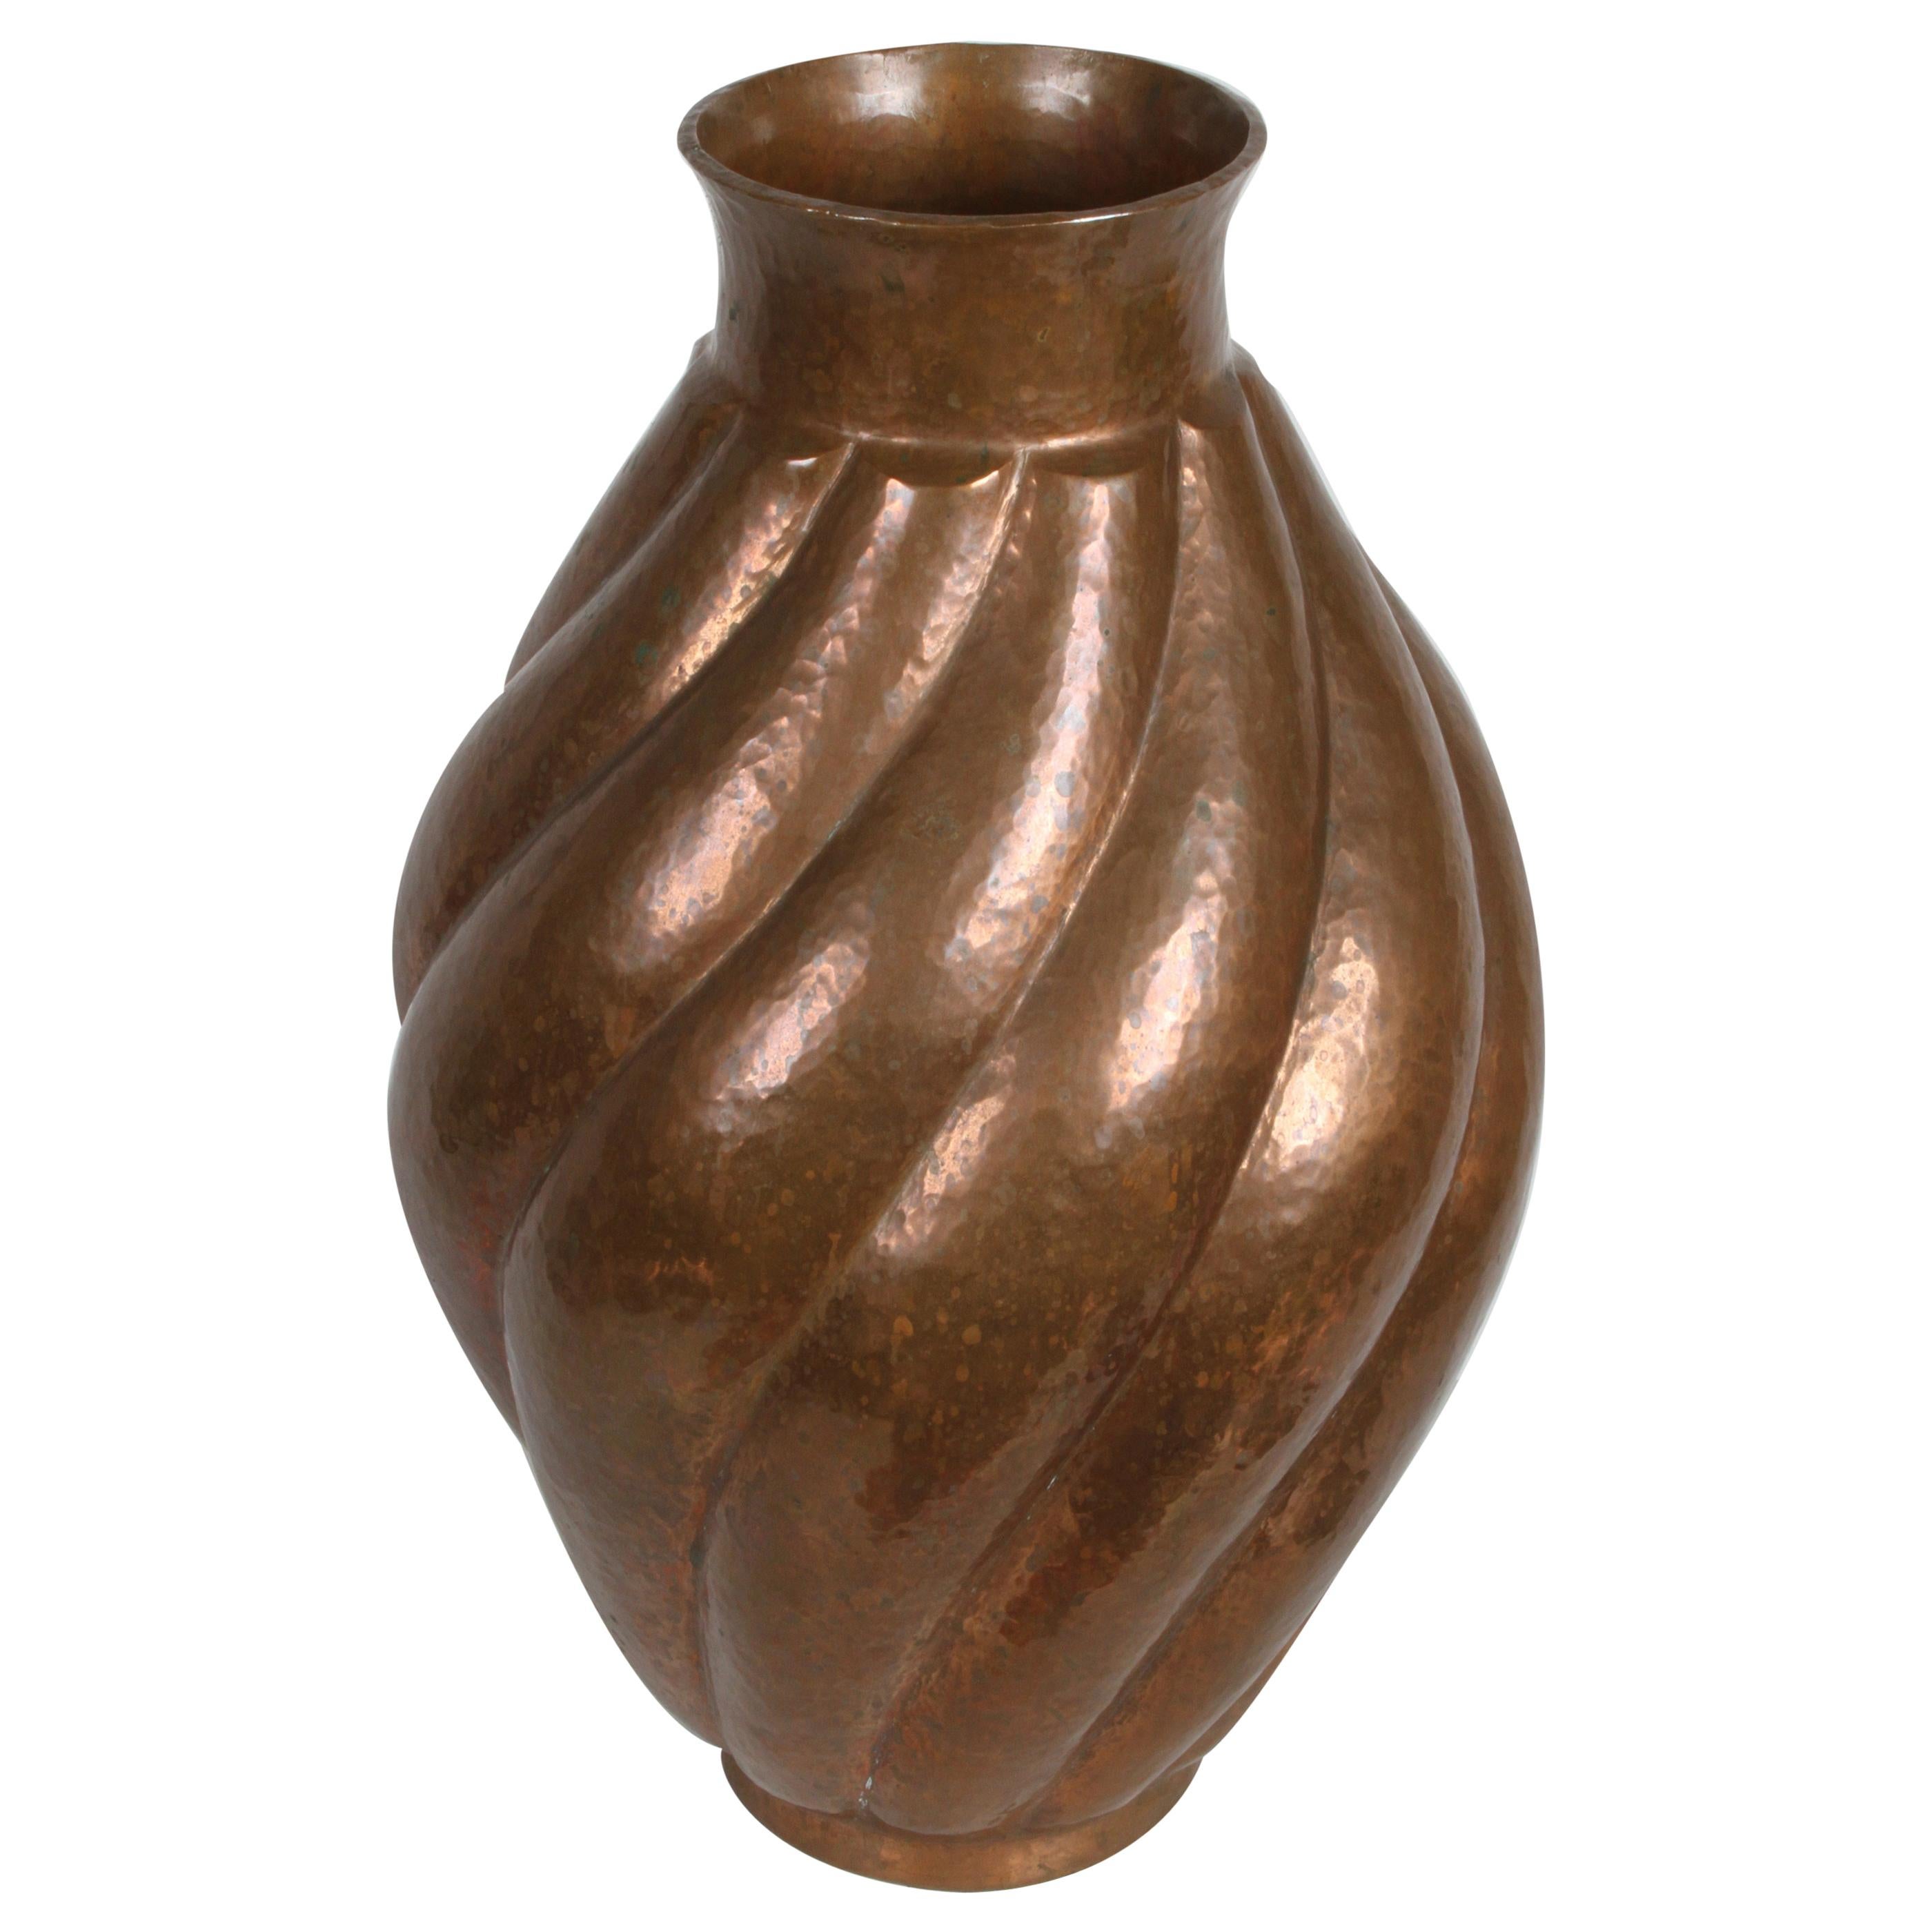 Vase ou récipient sculptural en cuivre vintage forgé à la main Santa Clara del Cobre